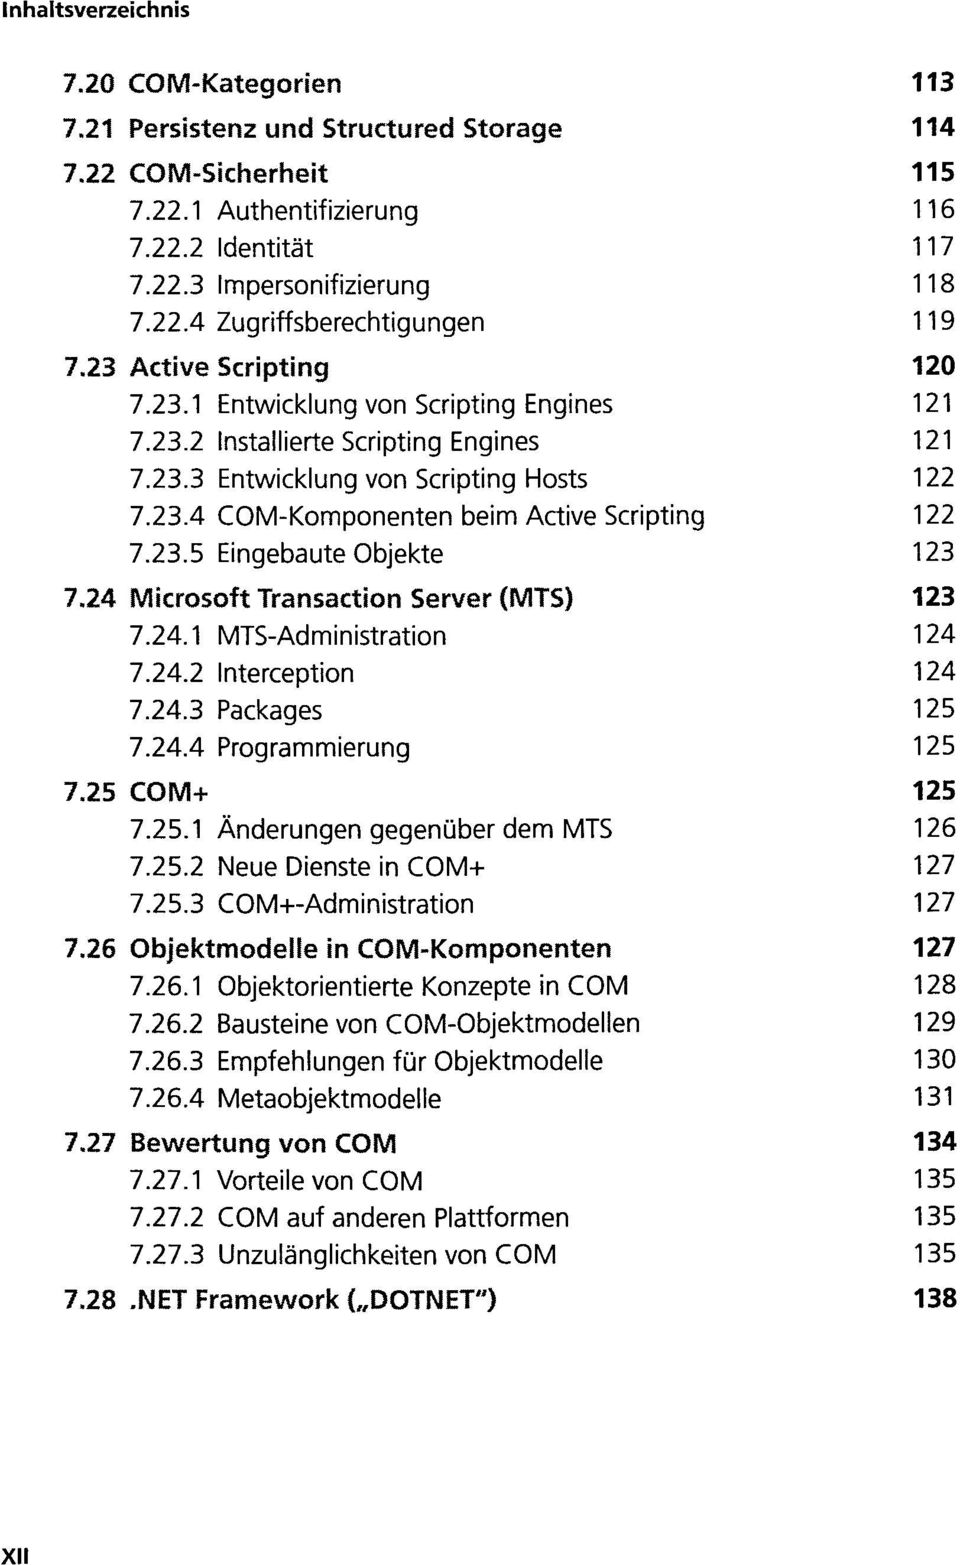 23.5 Eingebaute Objekte 123 7.24 Microsoft Transaction Server (MTS) 123 7.24.1 MTS-Administration 124 7.24.2 Interception 124 7.24.3 Packages 125 7.24.4 Programmierung 125 7.25 COM+ 125 7.25.1 Änderungen gegenüber dem MTS 126 7.